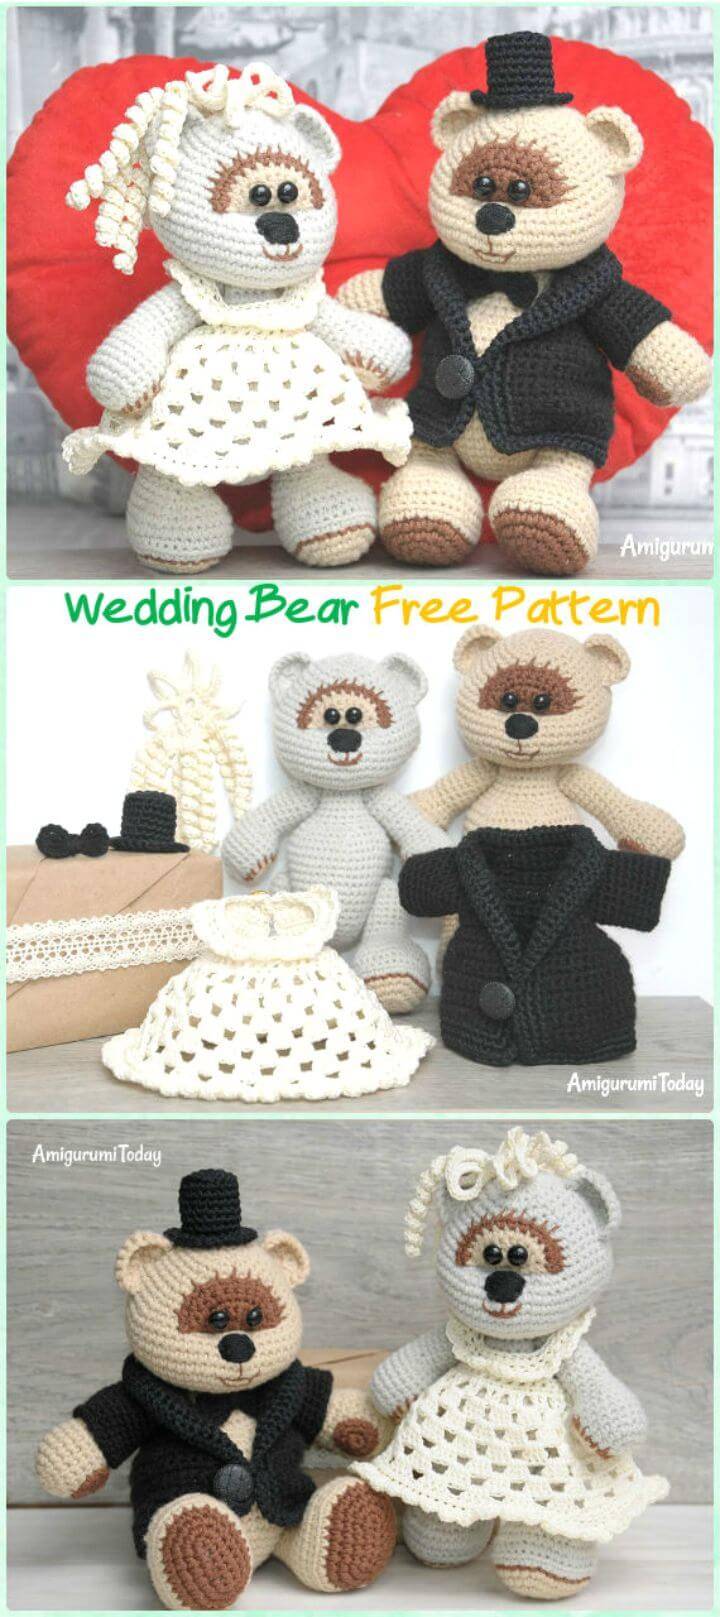 How To Free Crochet Amigurumi Wedding Teddy Bear